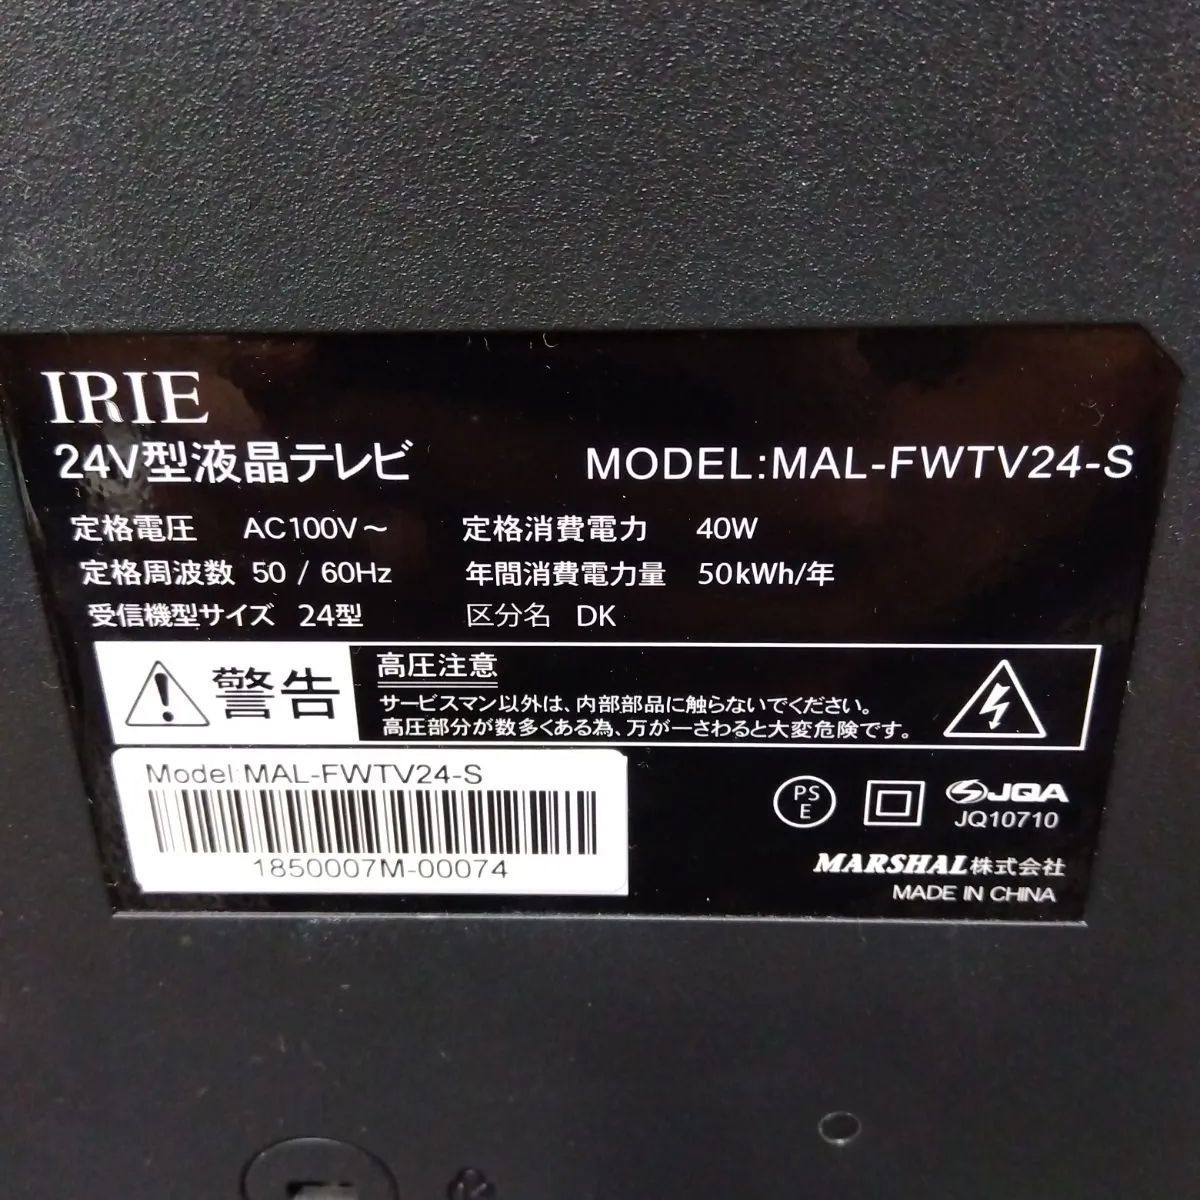 IRIE 24V型液晶テレビ MAL-FWTV24-S - コアラショップ - メルカリ